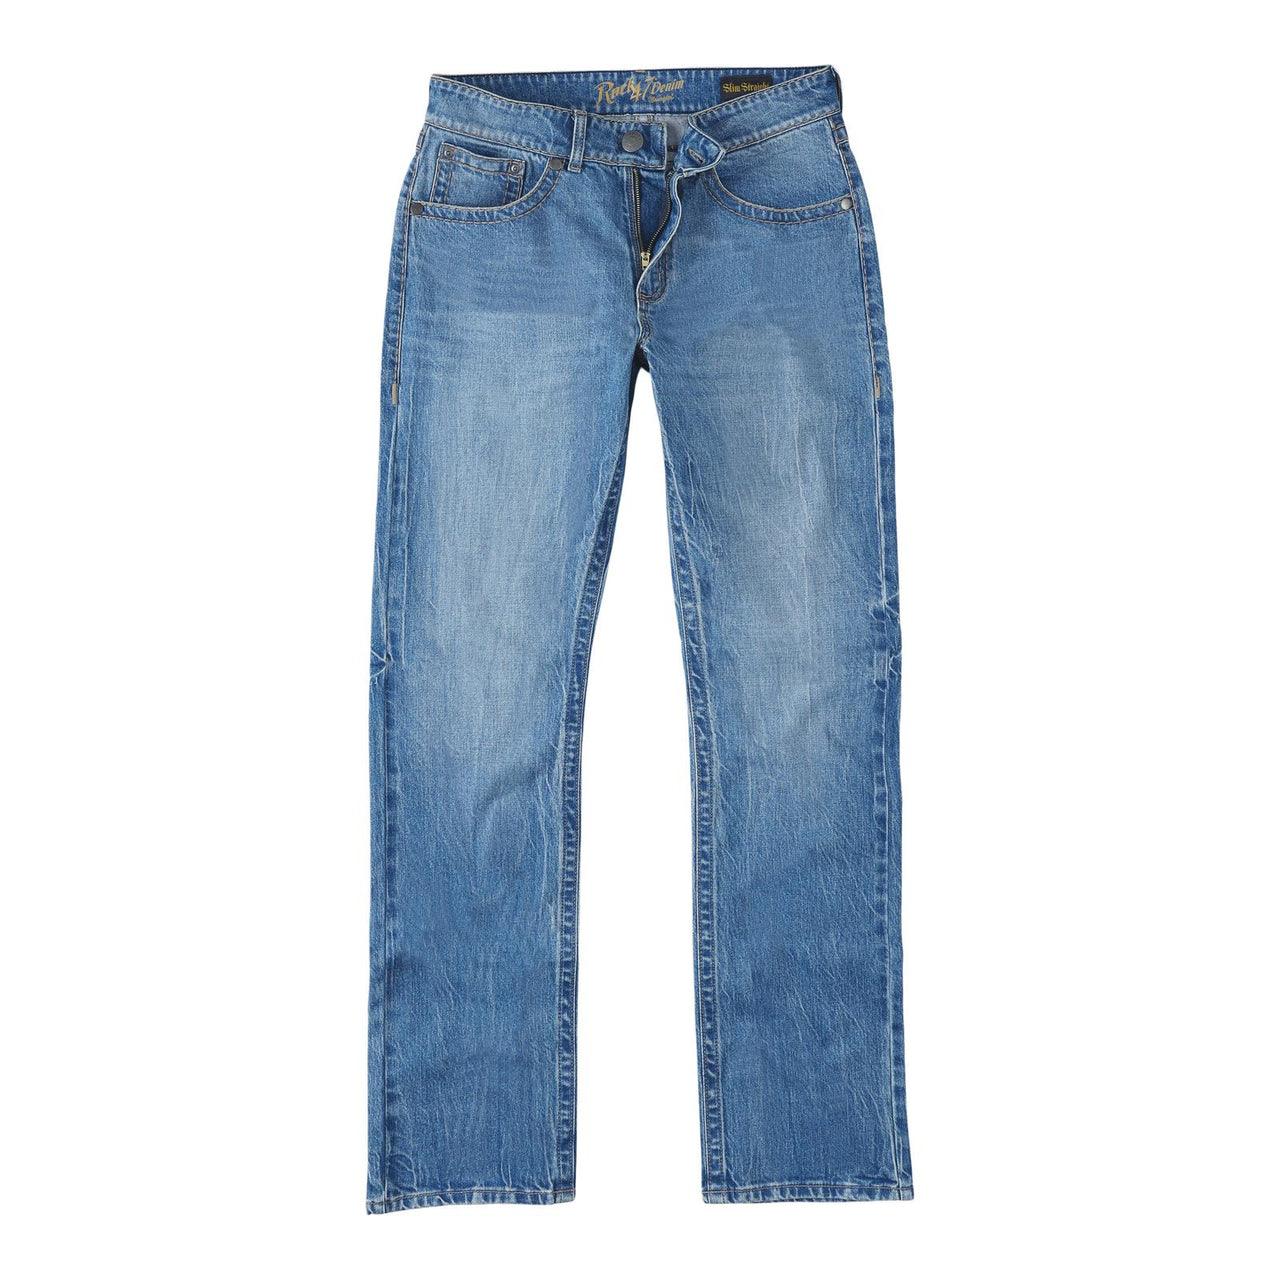 Wrangler Men's Rock 47 Slim Straight Jeans - Ashland